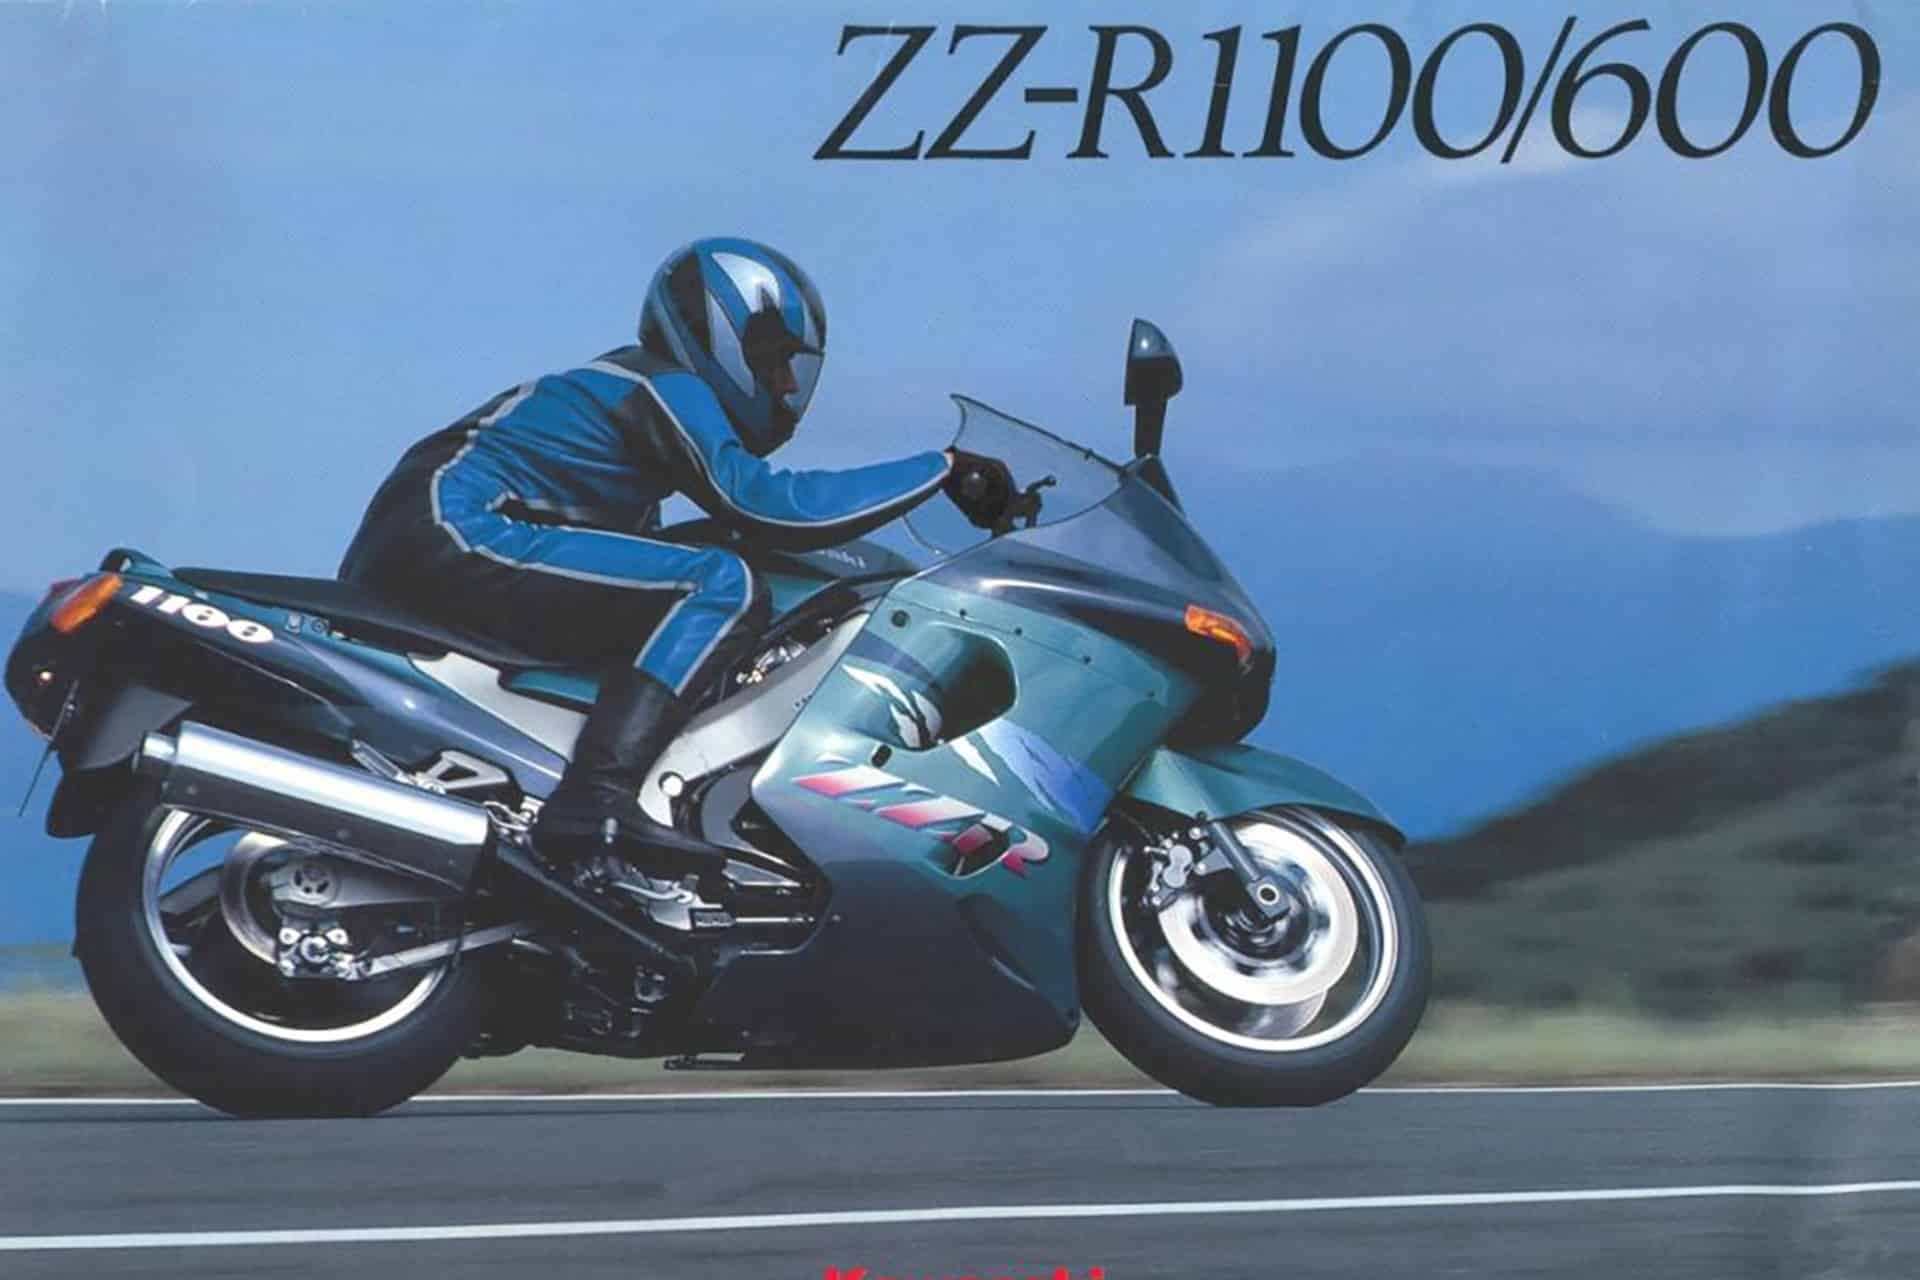 Retroprueba "Old School": Kawasaki ZZR 1100 de 1992